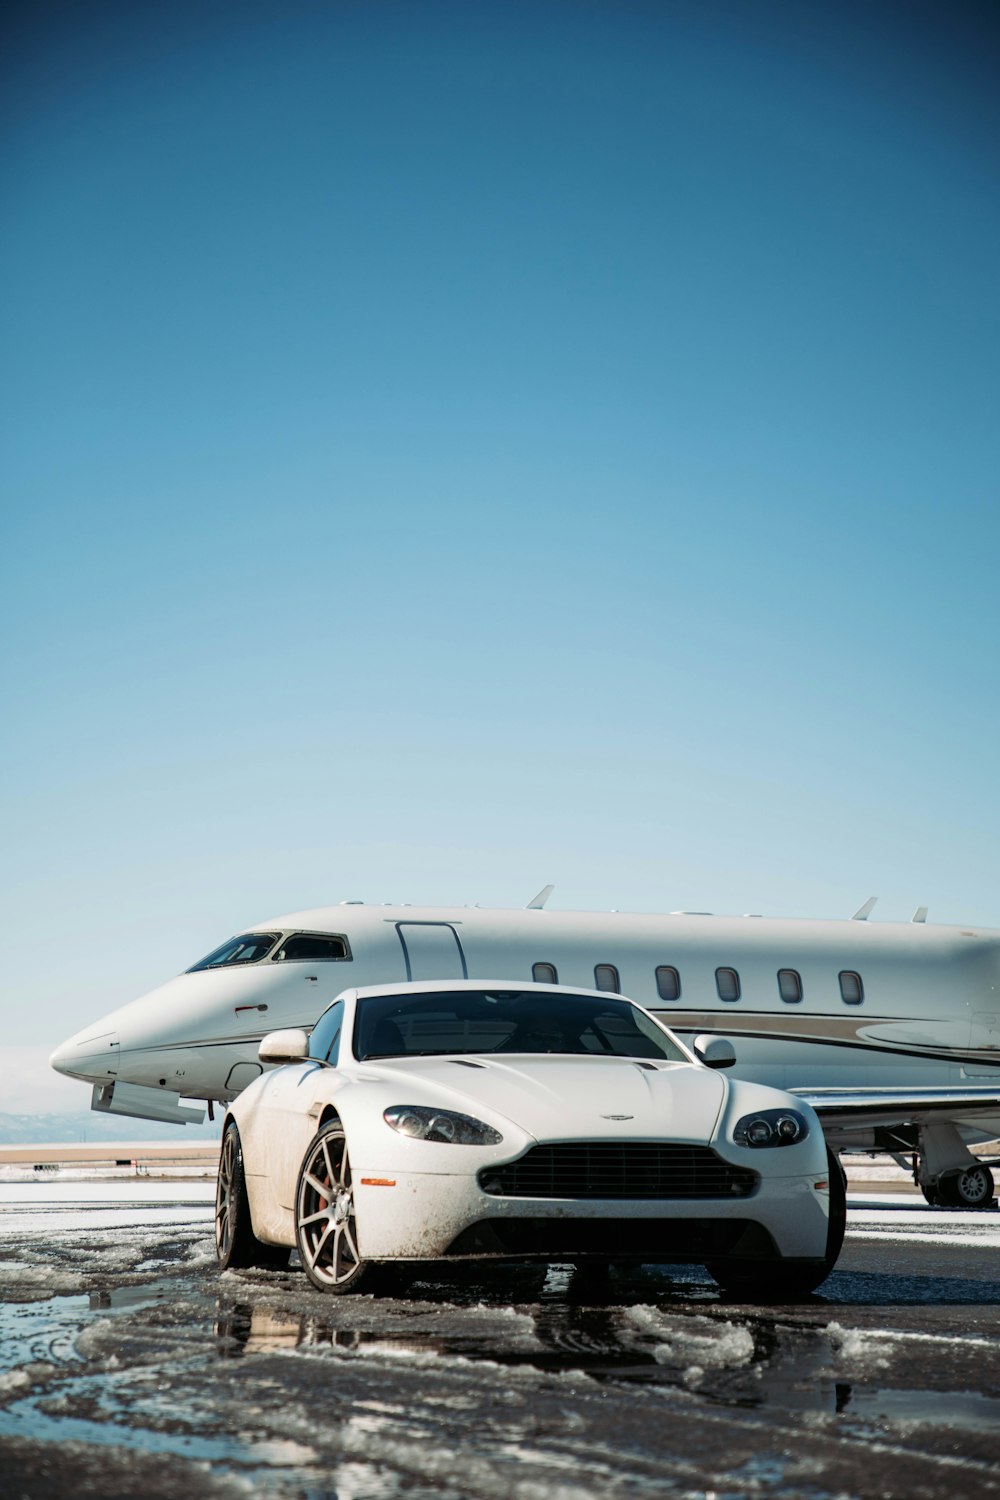 Une voiture blanche est garée devant un jet privé